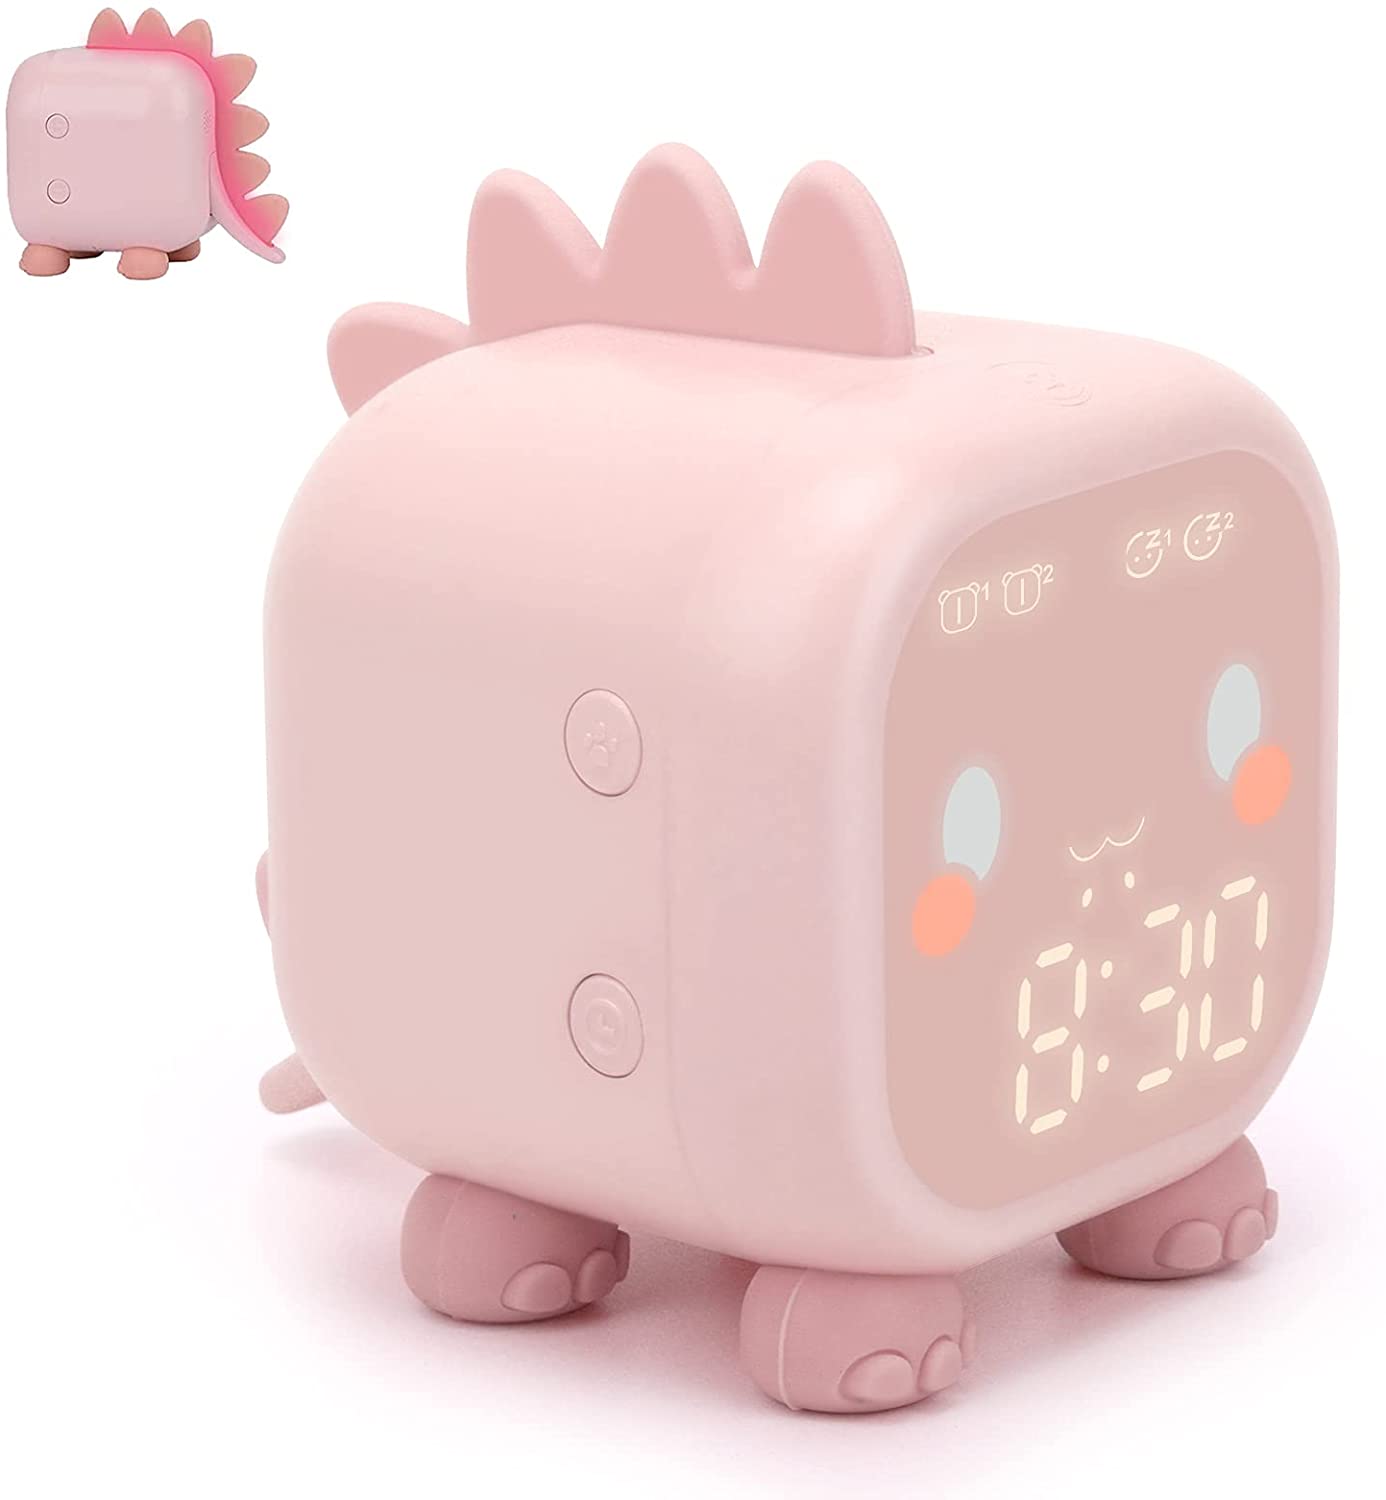 Reloj despertador de luz de amanecer para niños con sueño pesado